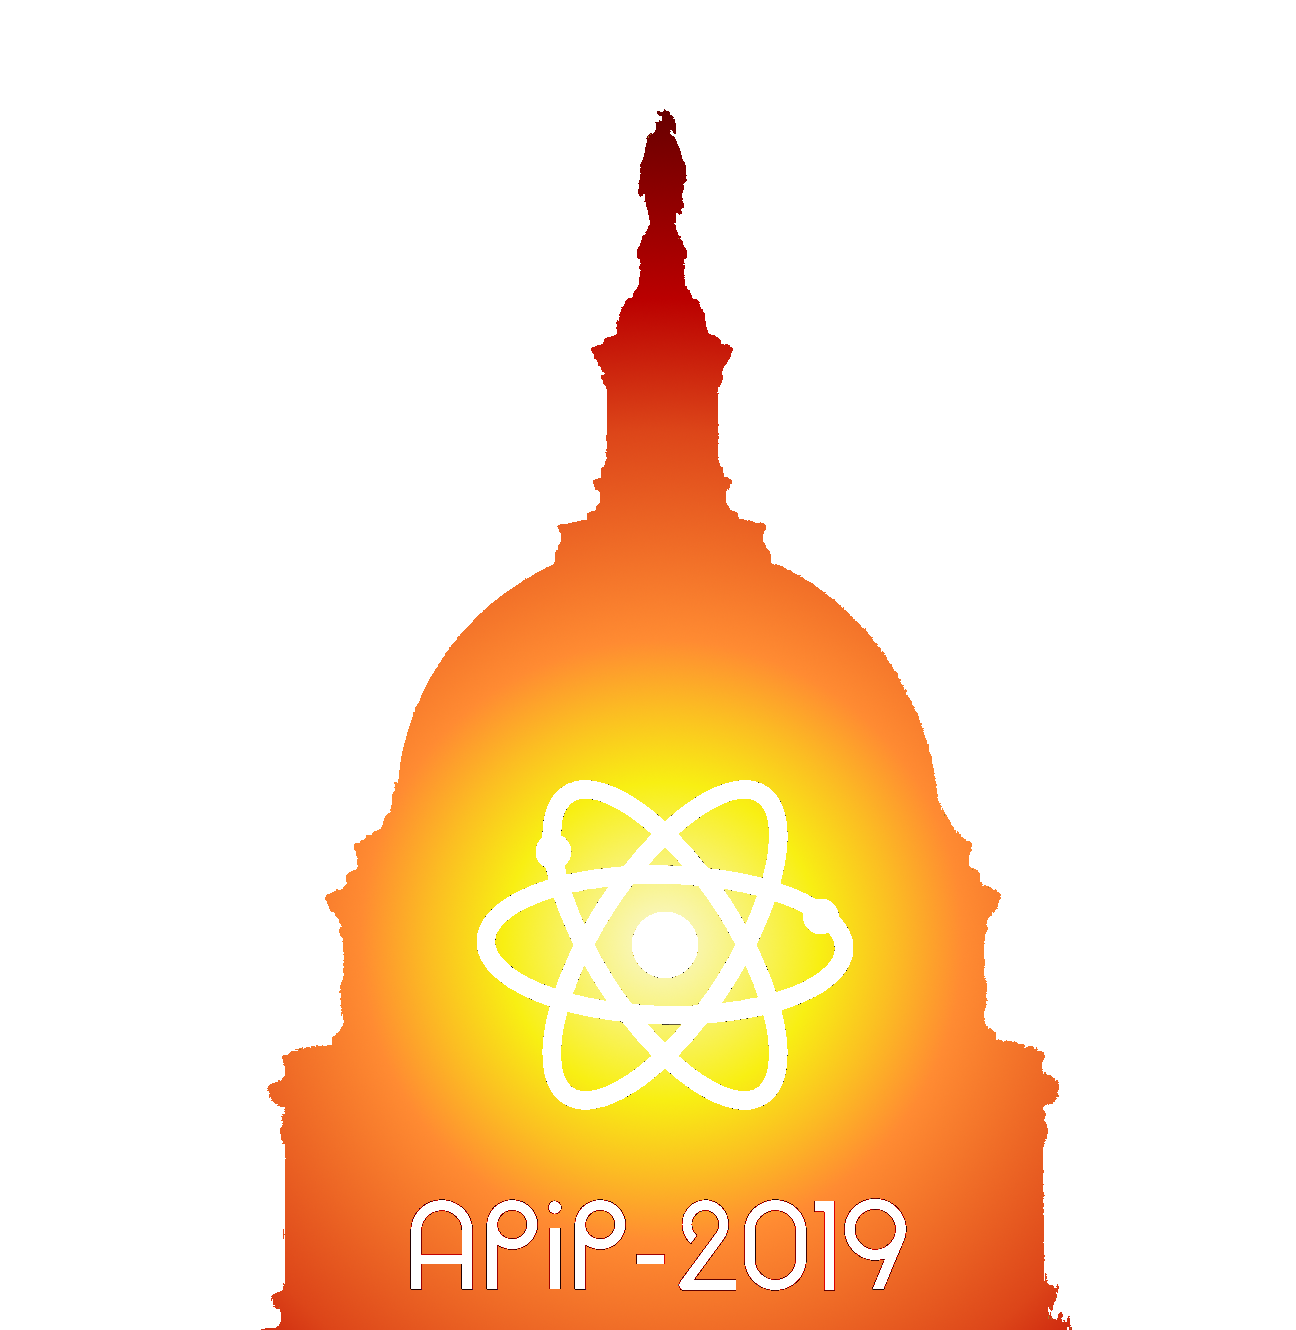 APiP-2019 logo